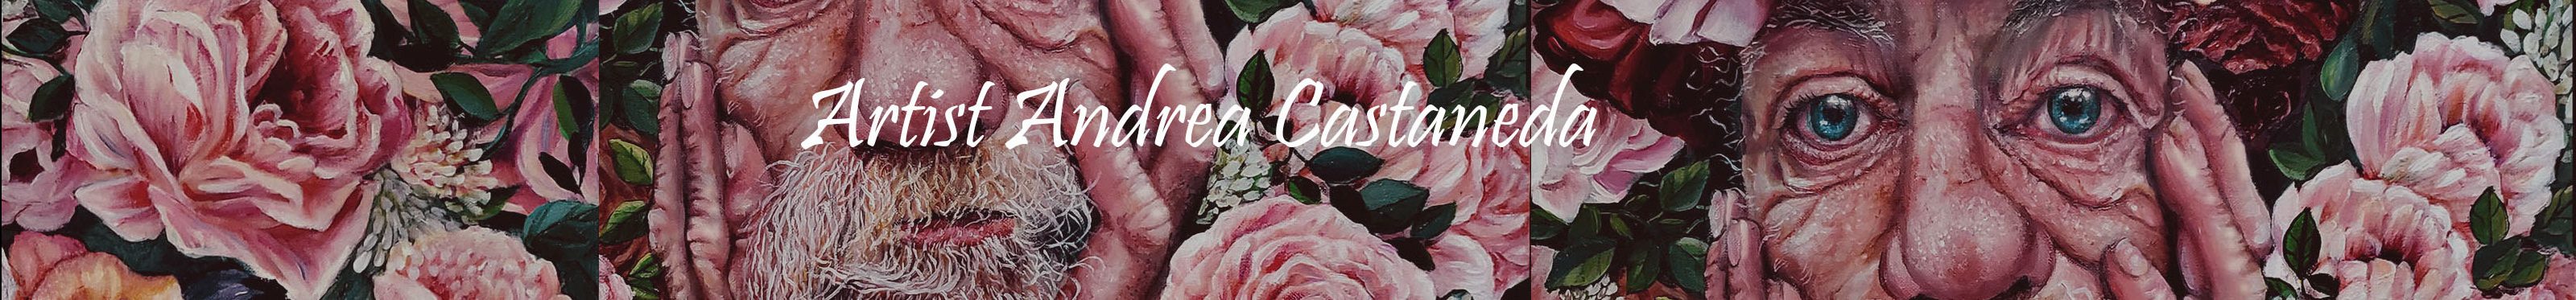 Banner de perfil de Andrea Castaneda